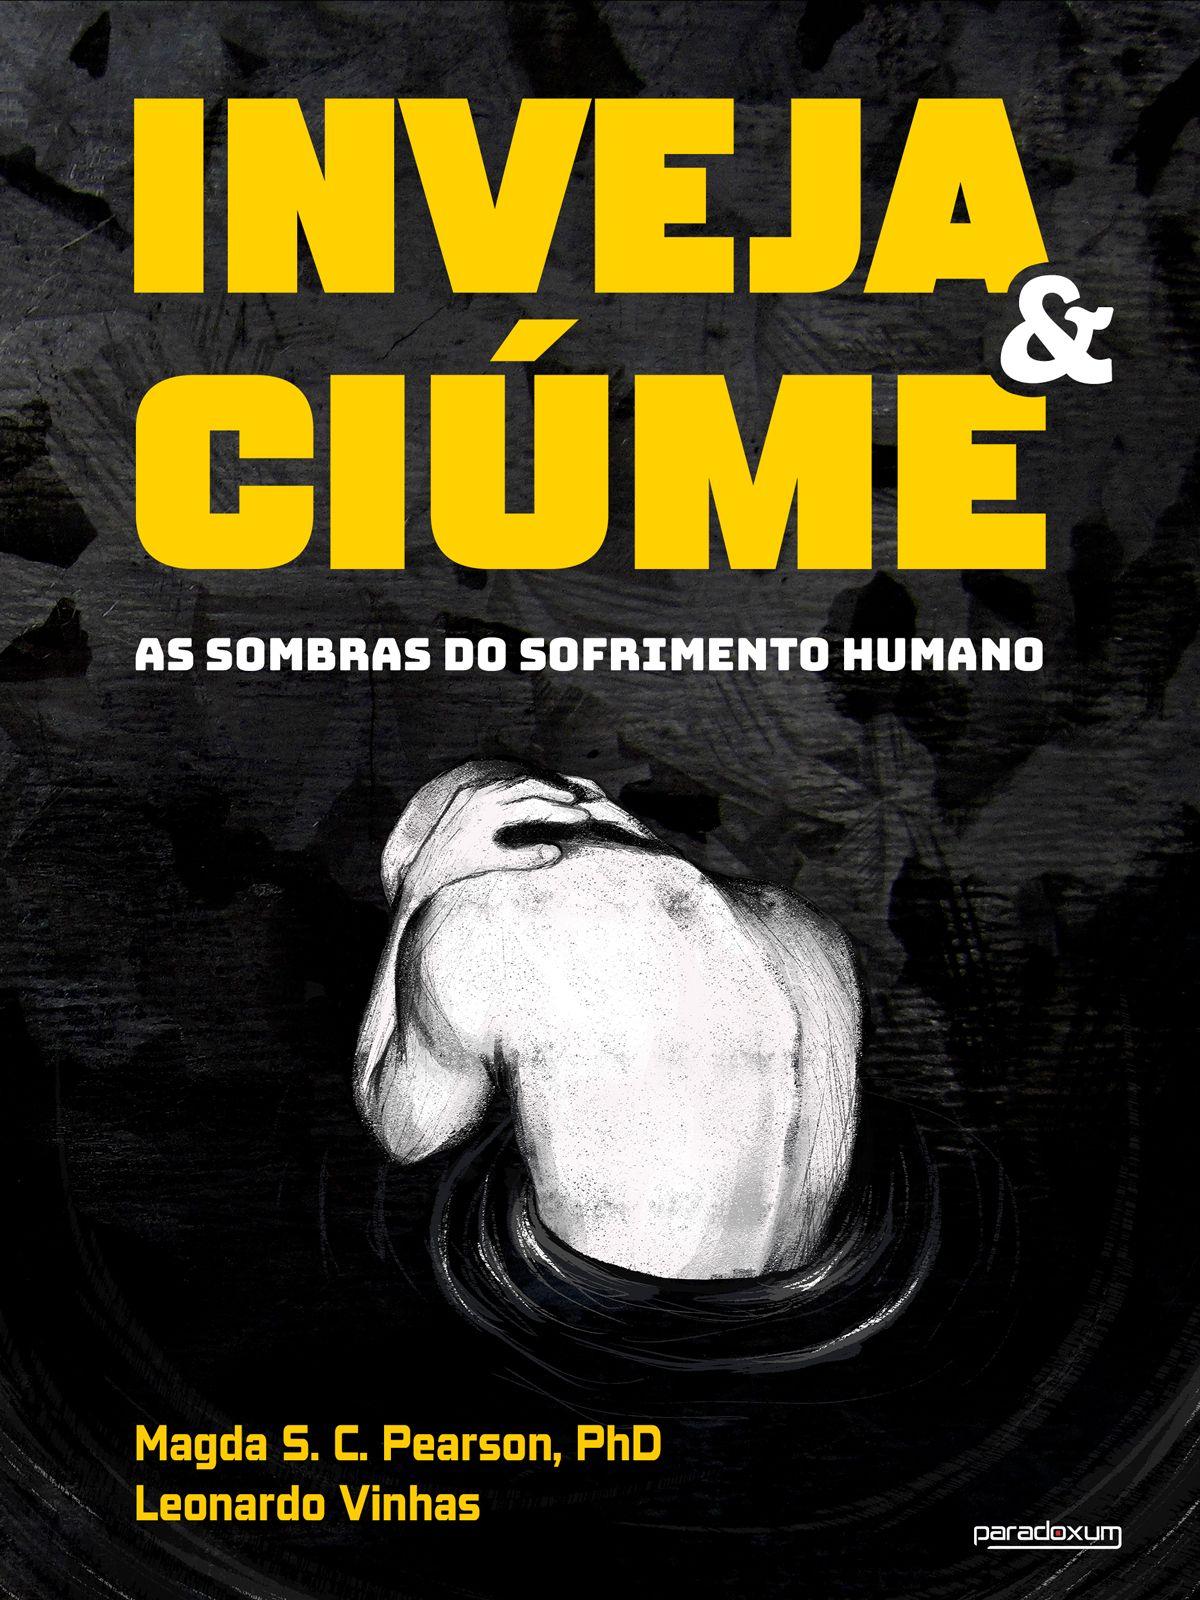 Capa do livro INVEJA E CIÚME, de Magda Pearson e Leonardo Vinhas